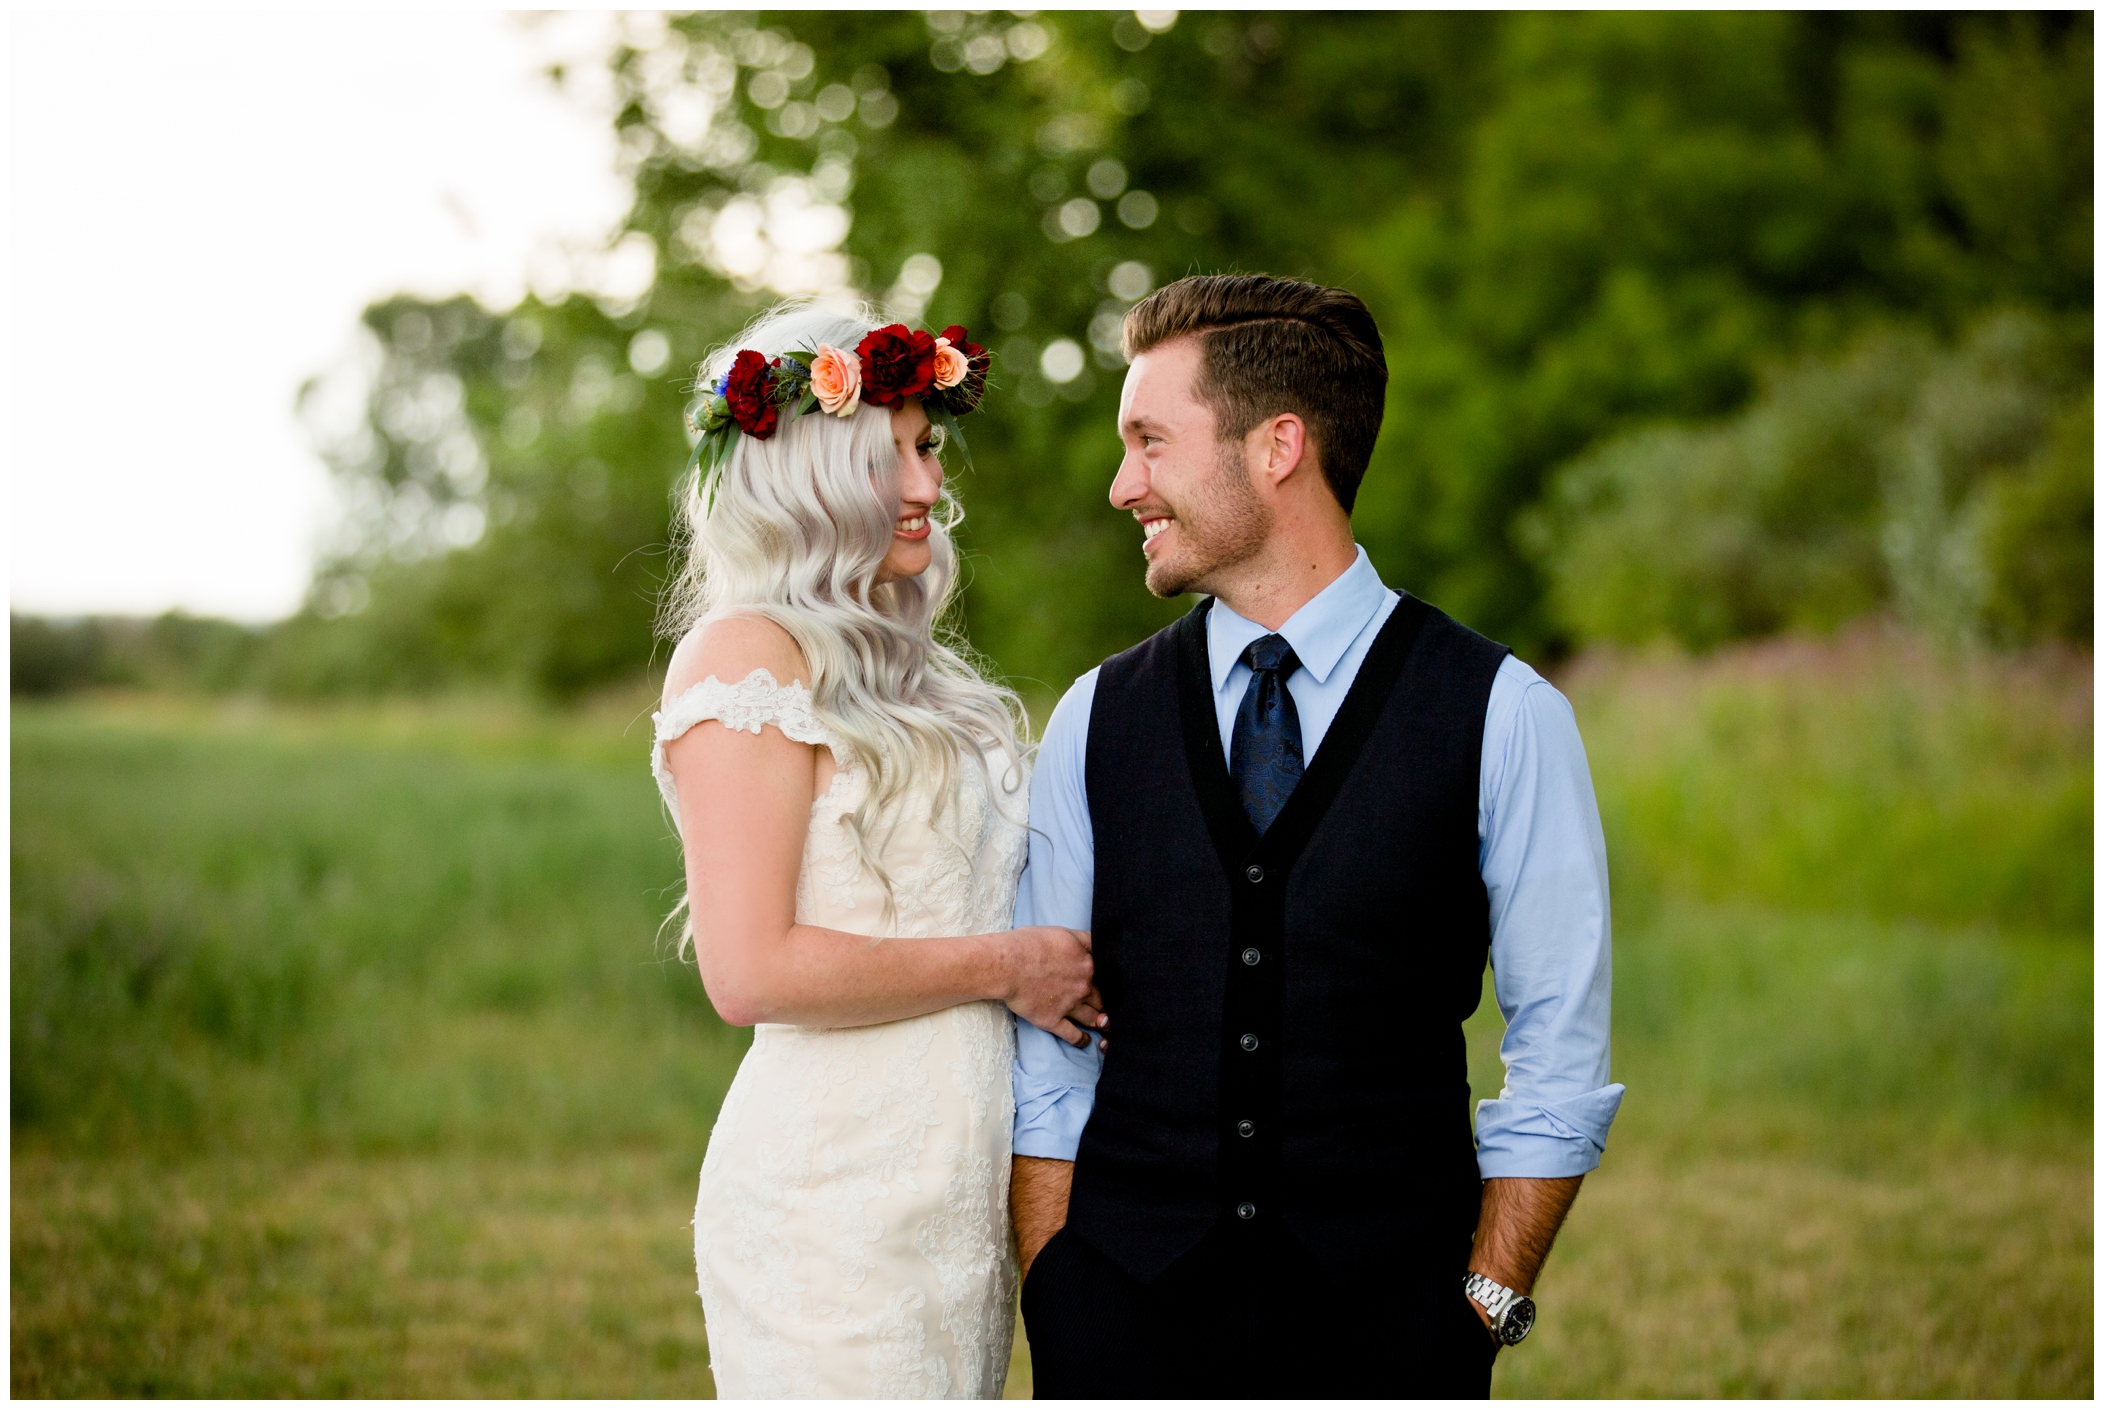 Longmont wedding photos at Lone Hawk Farm by Plum Pretty Photography